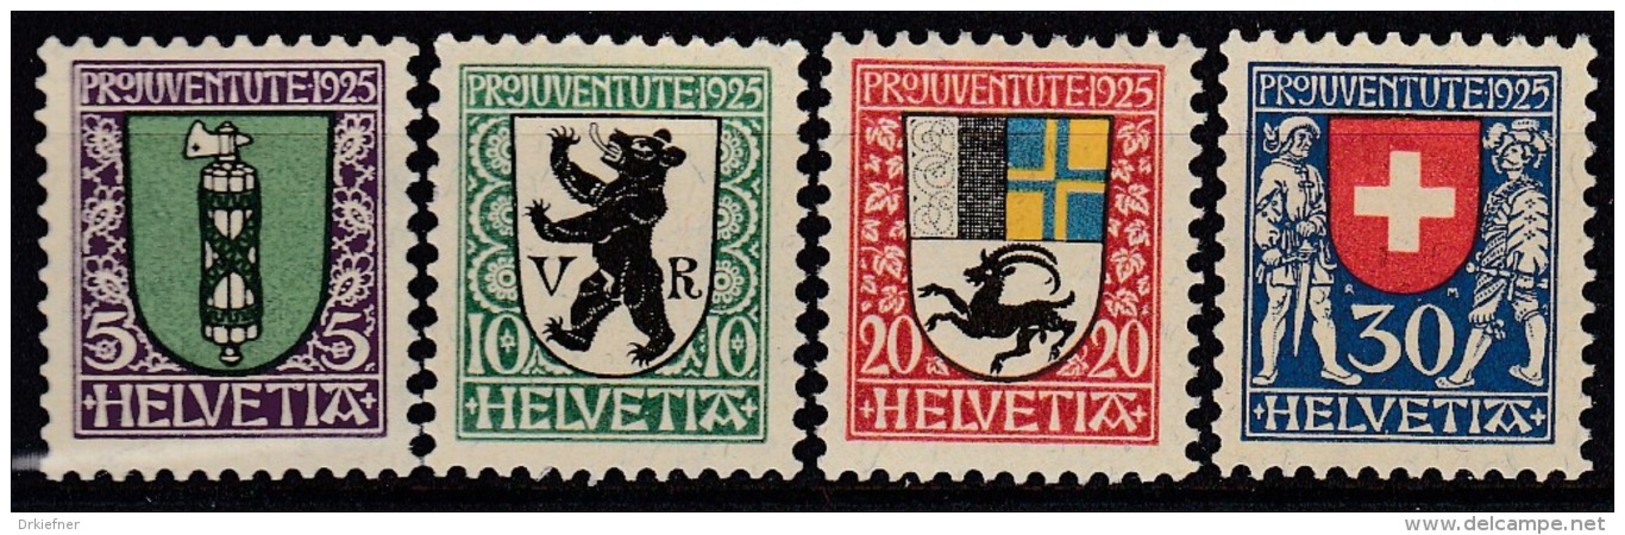 SCHWEIZ  214-217, Postfrisch **, PRO JUVENTUTE 1925, Wappen - Ungebraucht